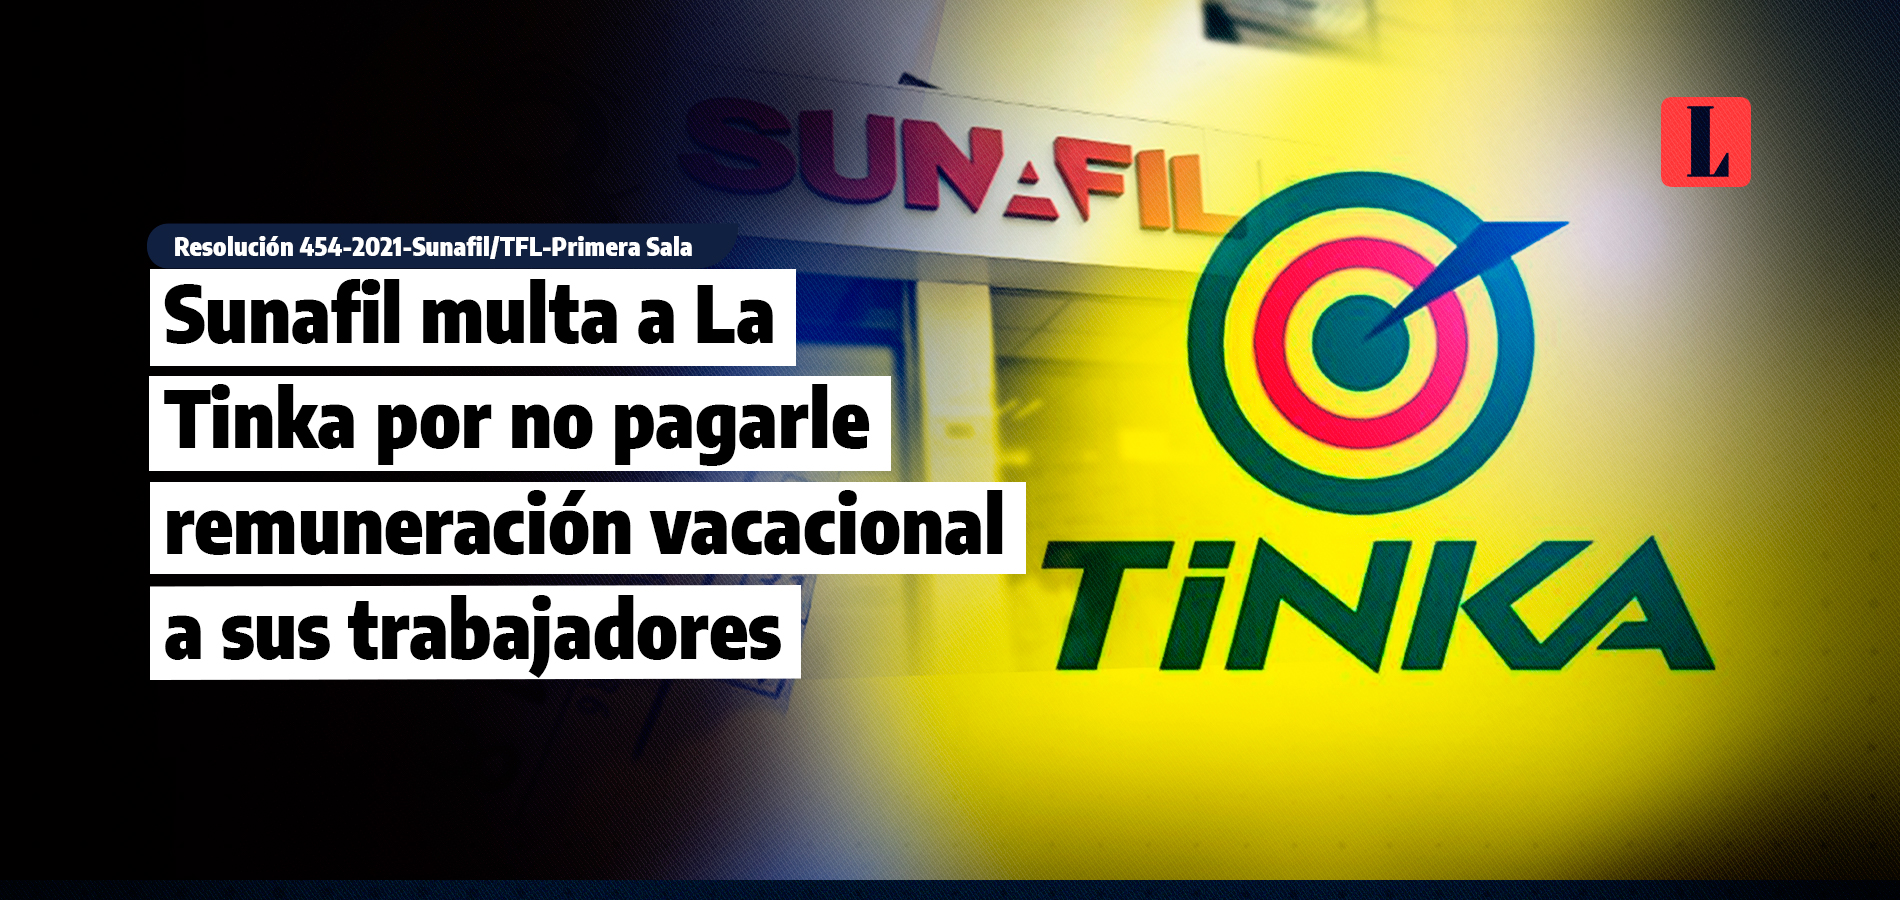 Sunafil multa a La Tinka por no pagarle remuneracion vacacional a sus trabajadores laley.pe